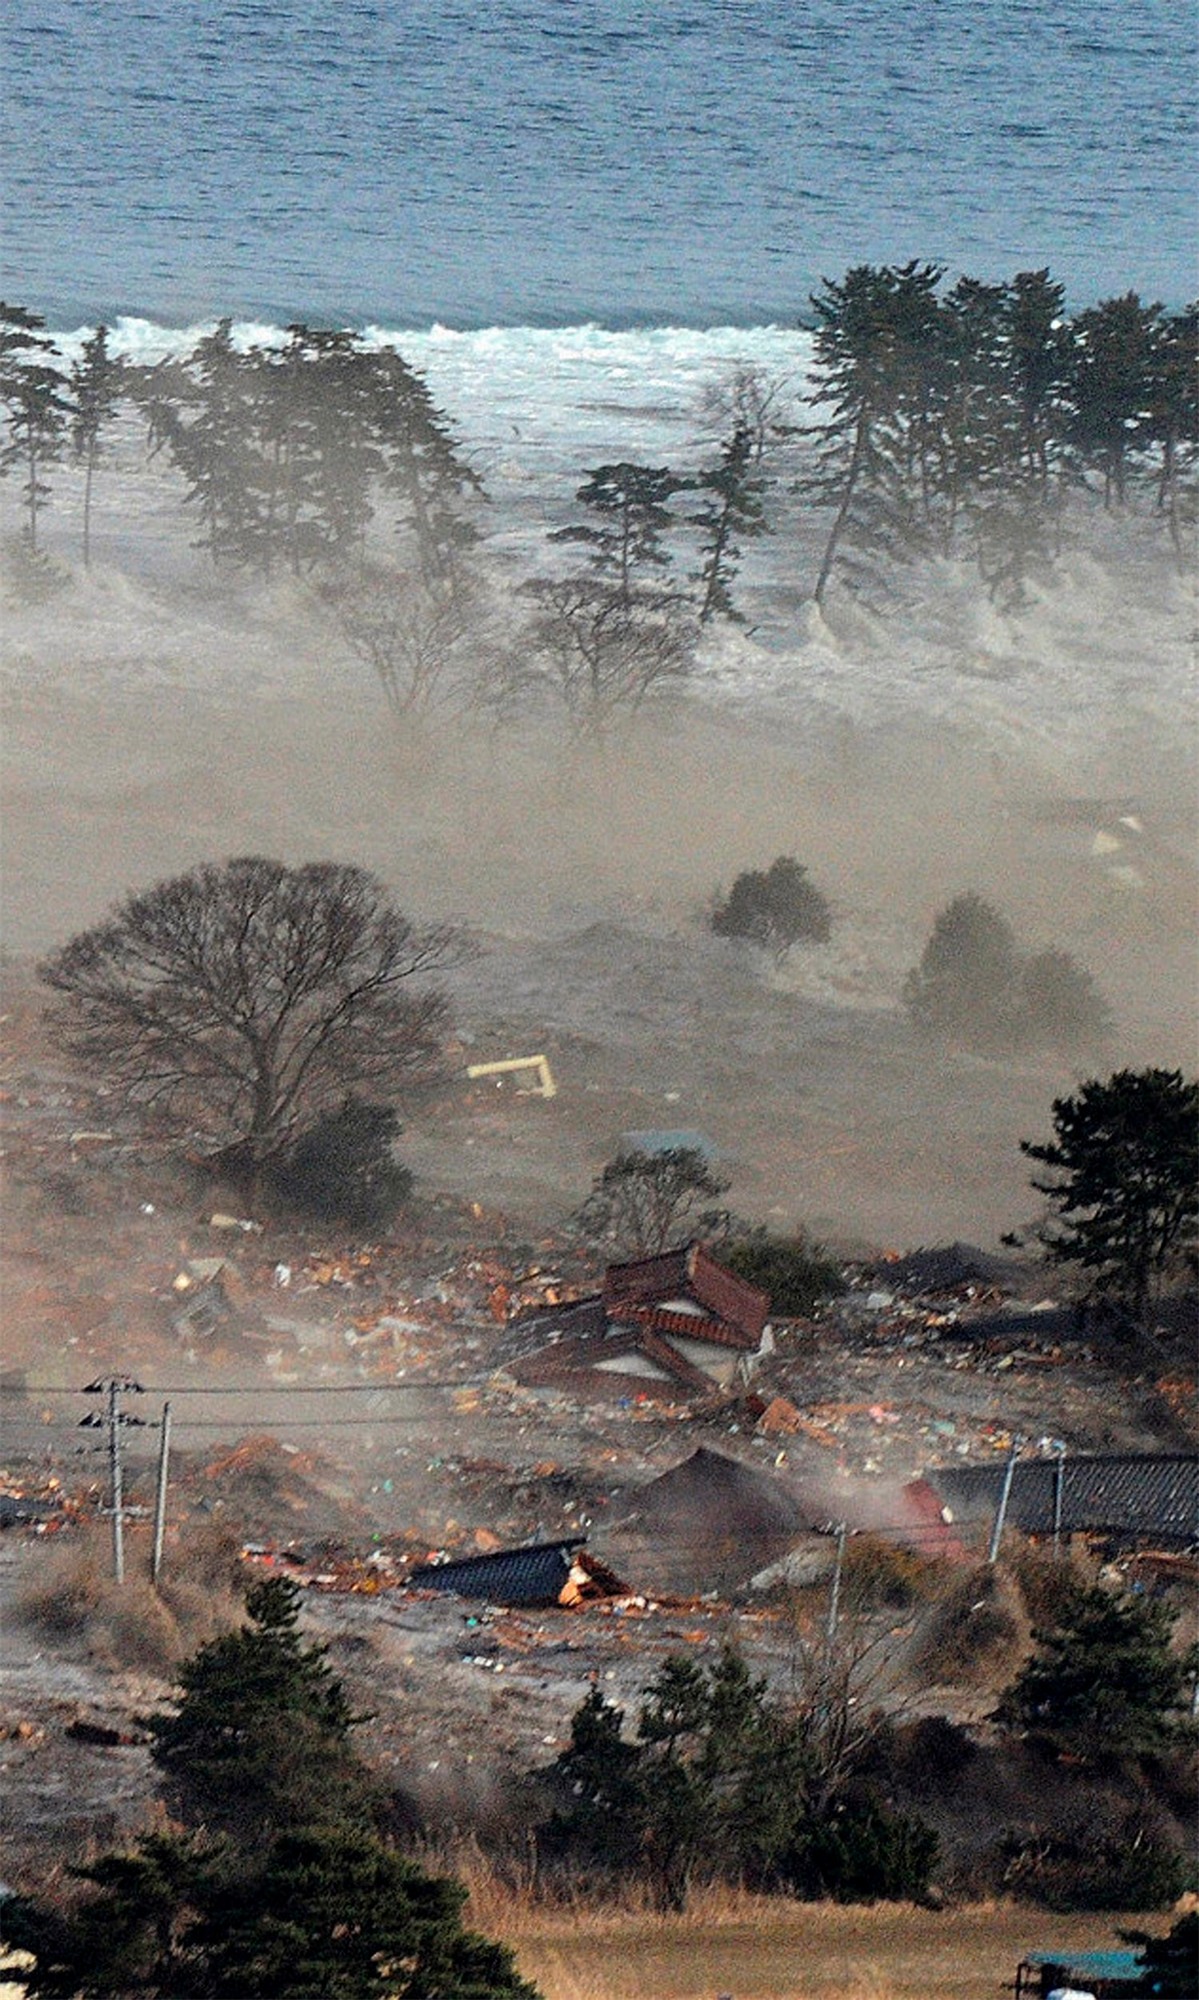 Tsunami natural disaster. ЦУНАМИ В Японии в 2011. Япония 2011 землетрясение и ЦУНАМИ. Стихийные бедствия в Японии ЦУНАМИ. Стихийное бедствие Япония 2011.